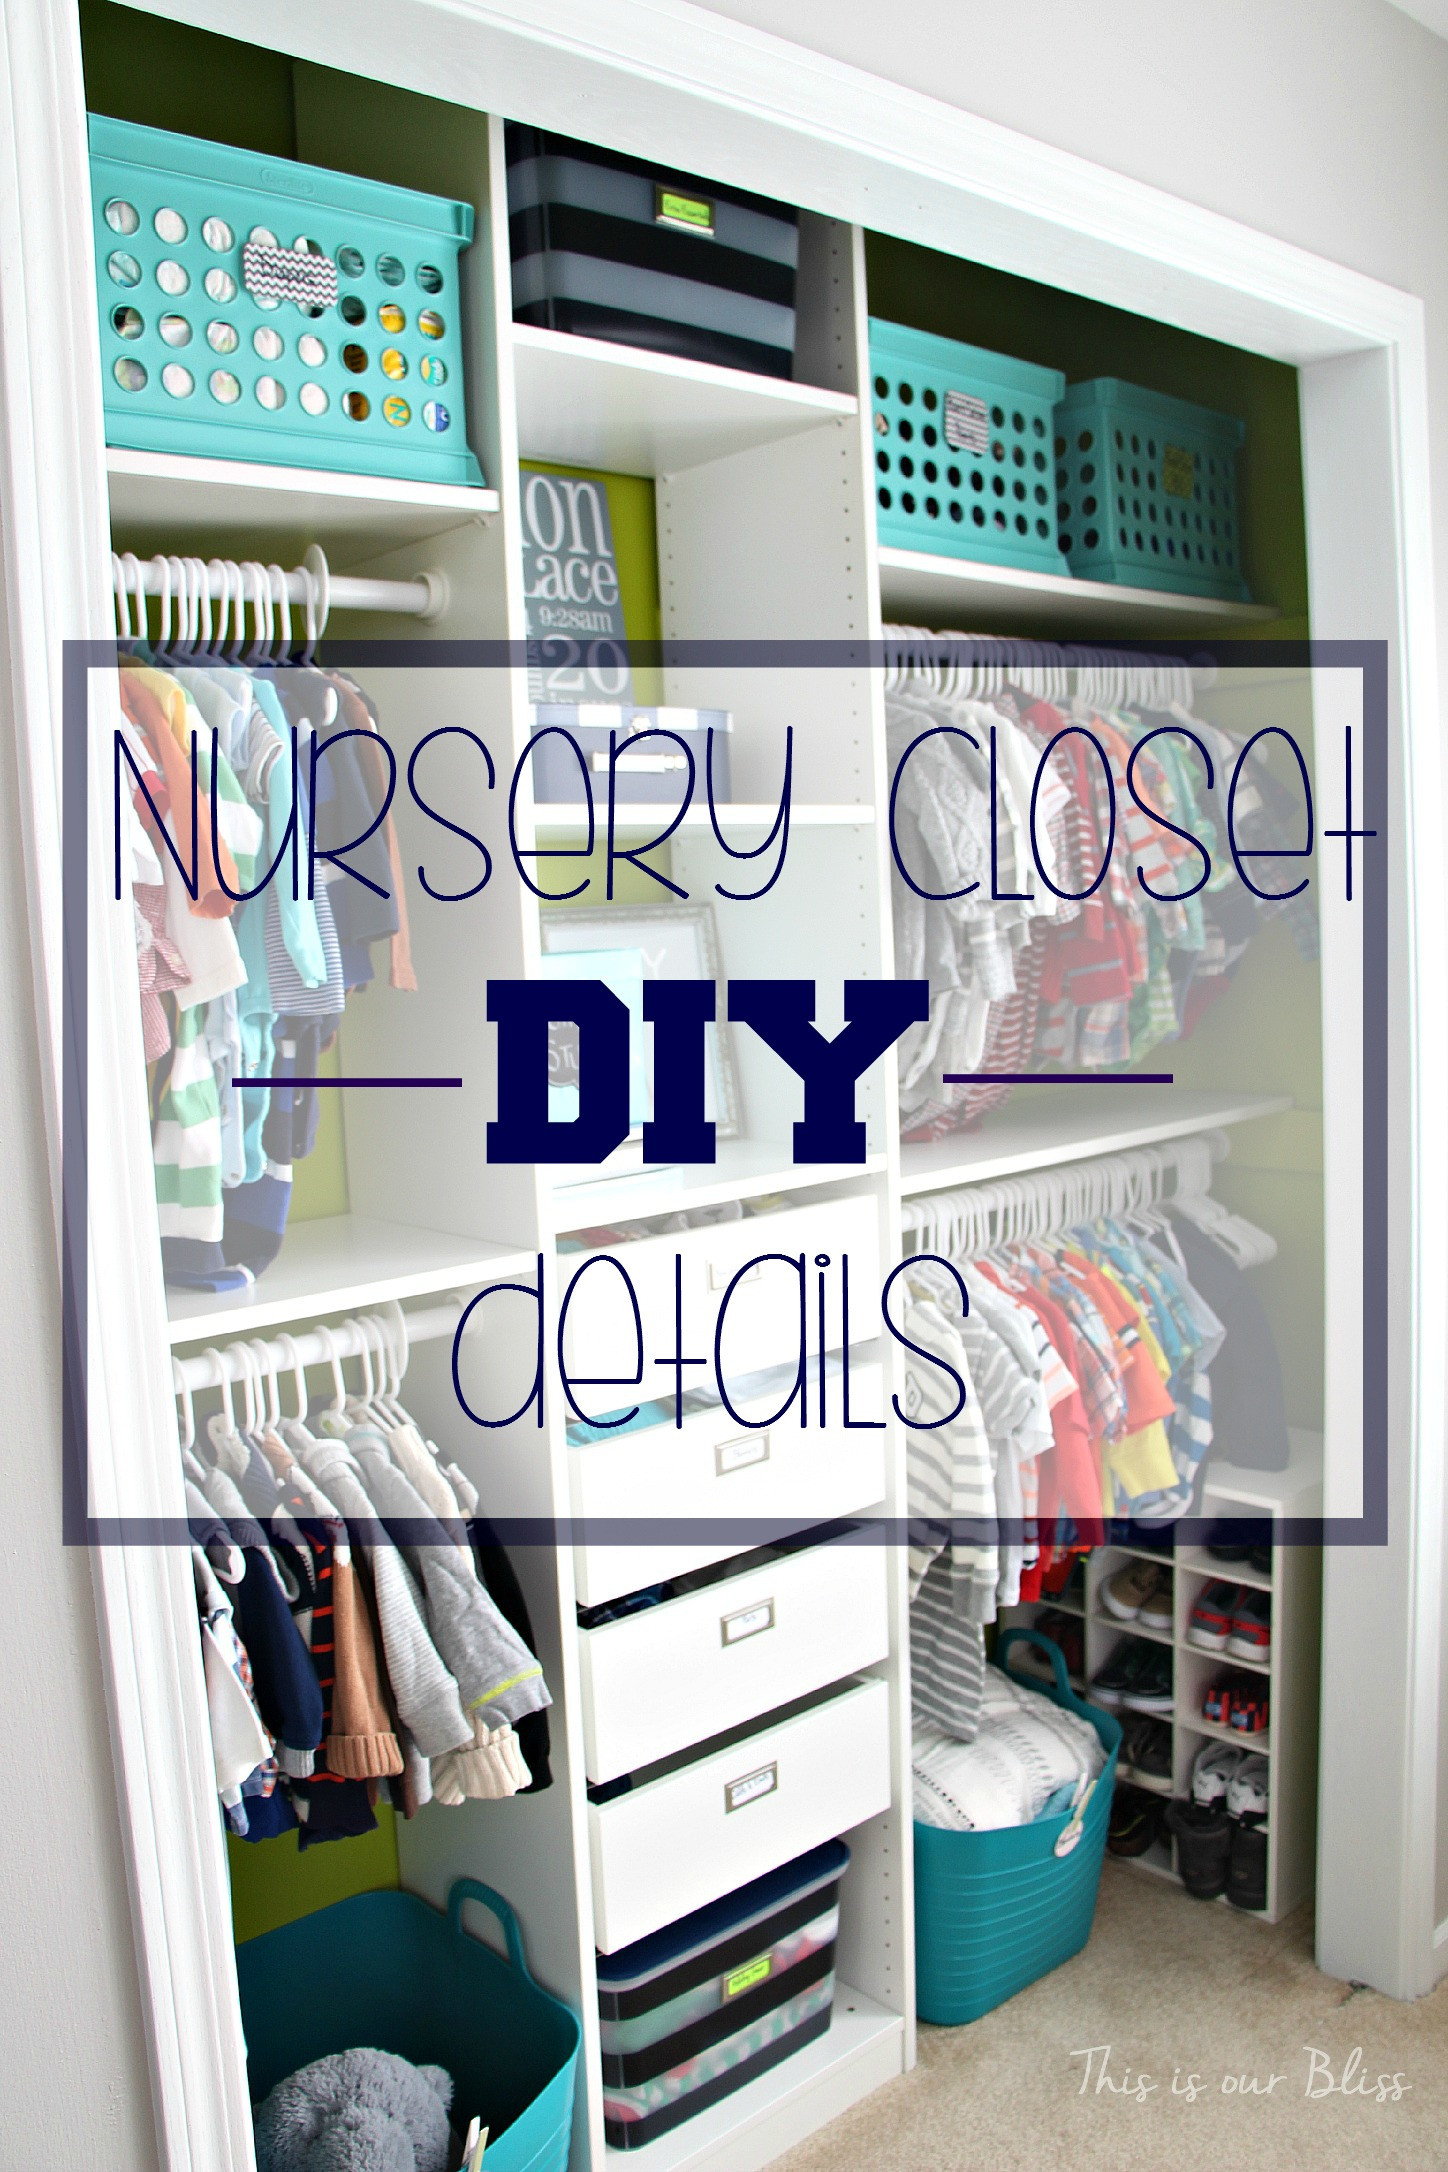 DIY Baby Closet
 Nursery Closet Makeover Details